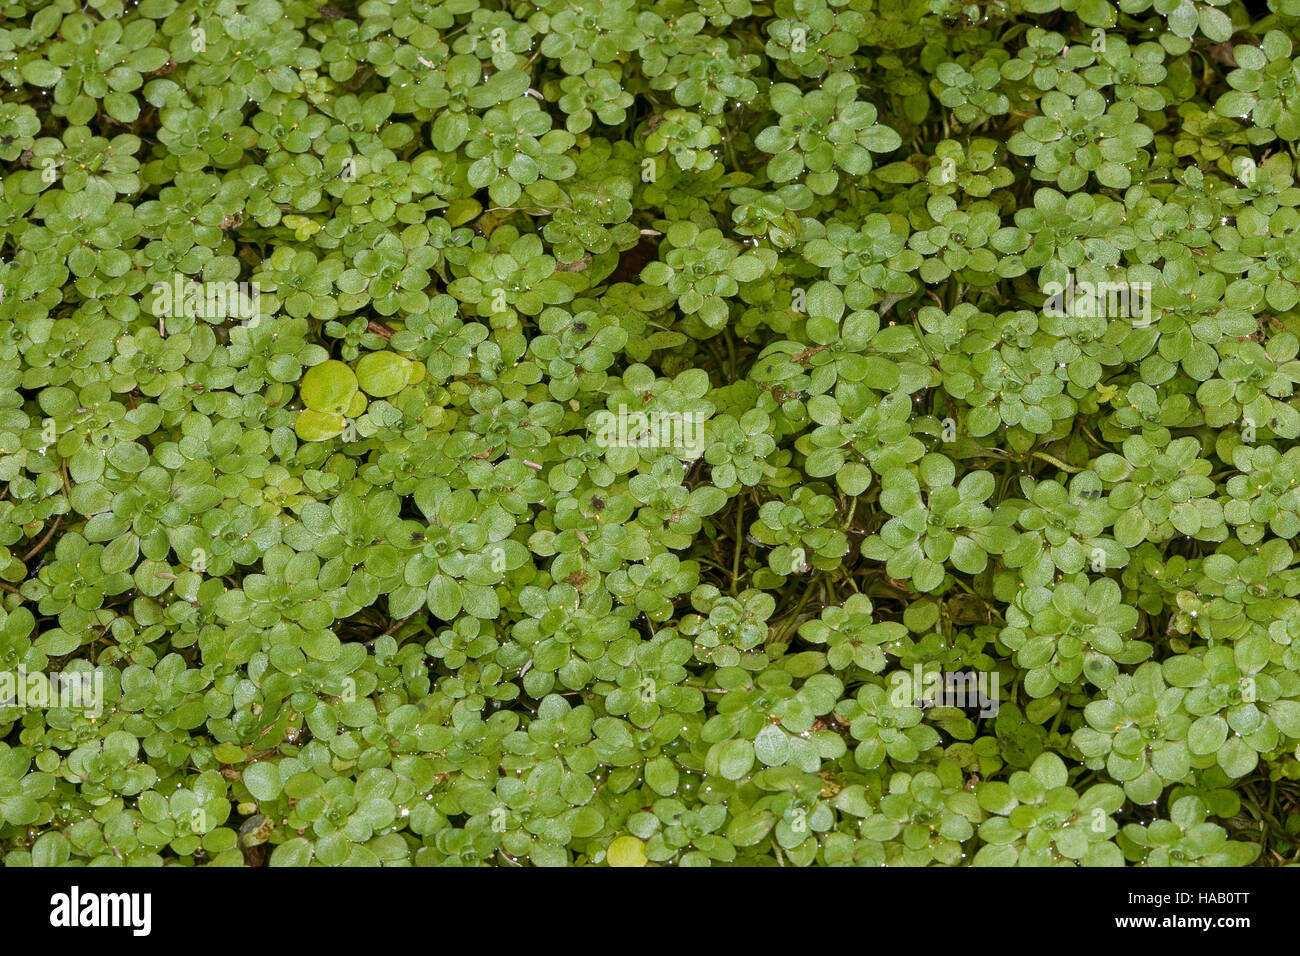 Wasserstern, Sumpf-Wasserstern, Callitriche palustris agg., Callitriche spec., Water Starwort Stock Photo